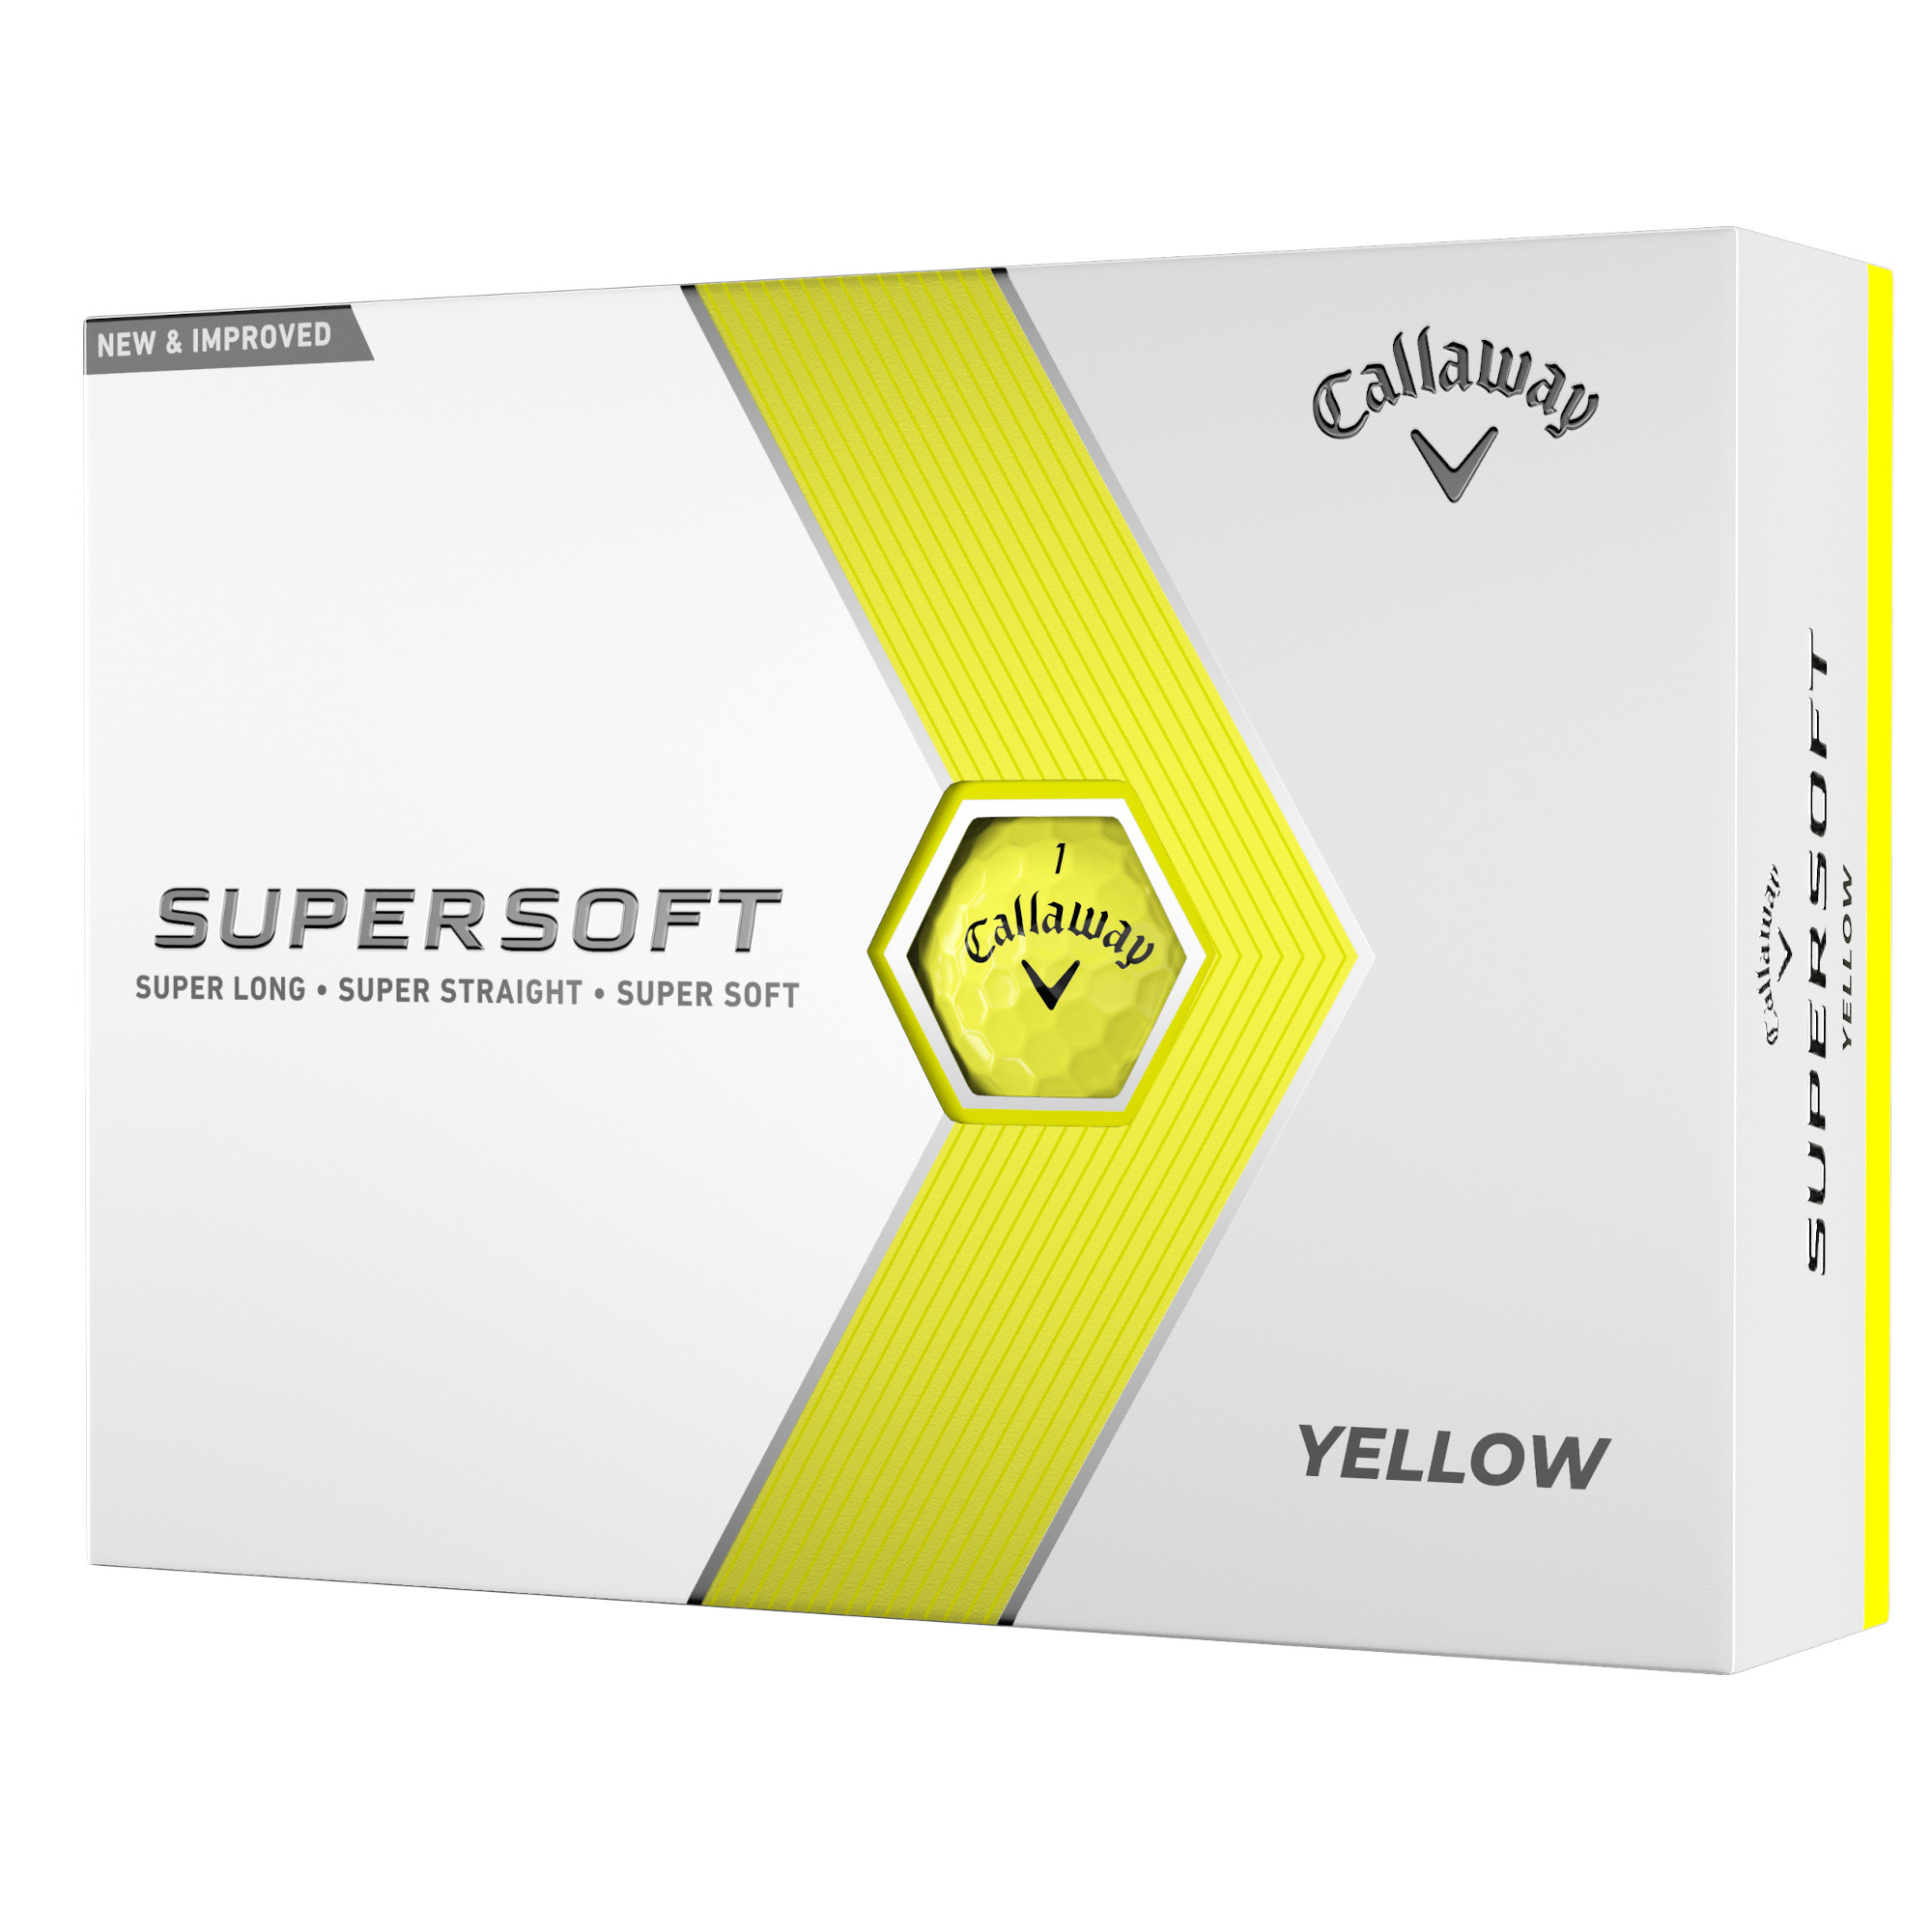 Callaway SuperSoft Golfbälle bedruckt, gelb (VPE à 12 Bälle)